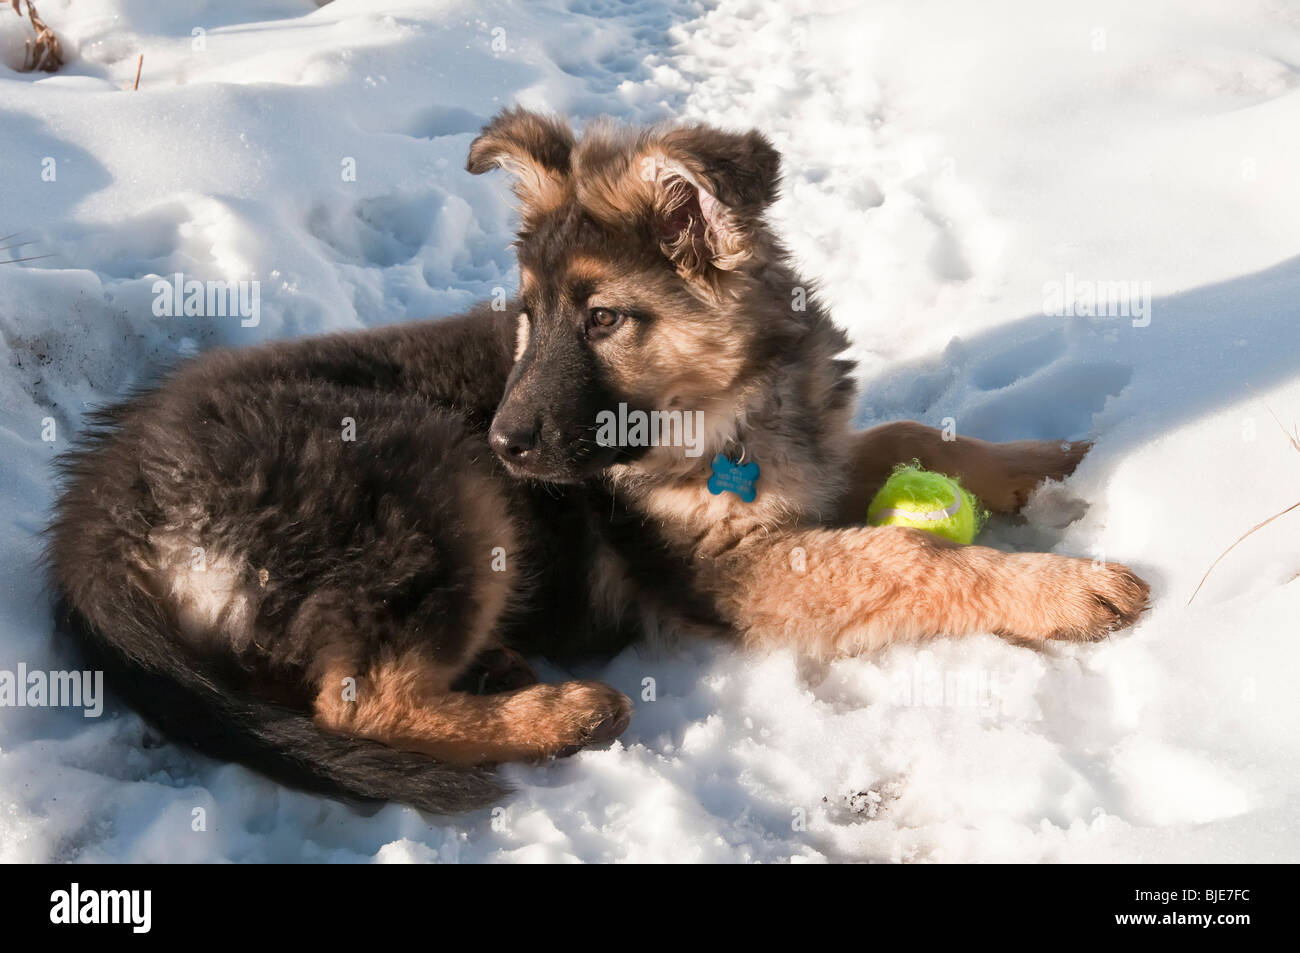 Berger Allemand, Canis lupus familiaris, poil long chiot, 13 semaines, dans la neige avec balle de tennis Banque D'Images